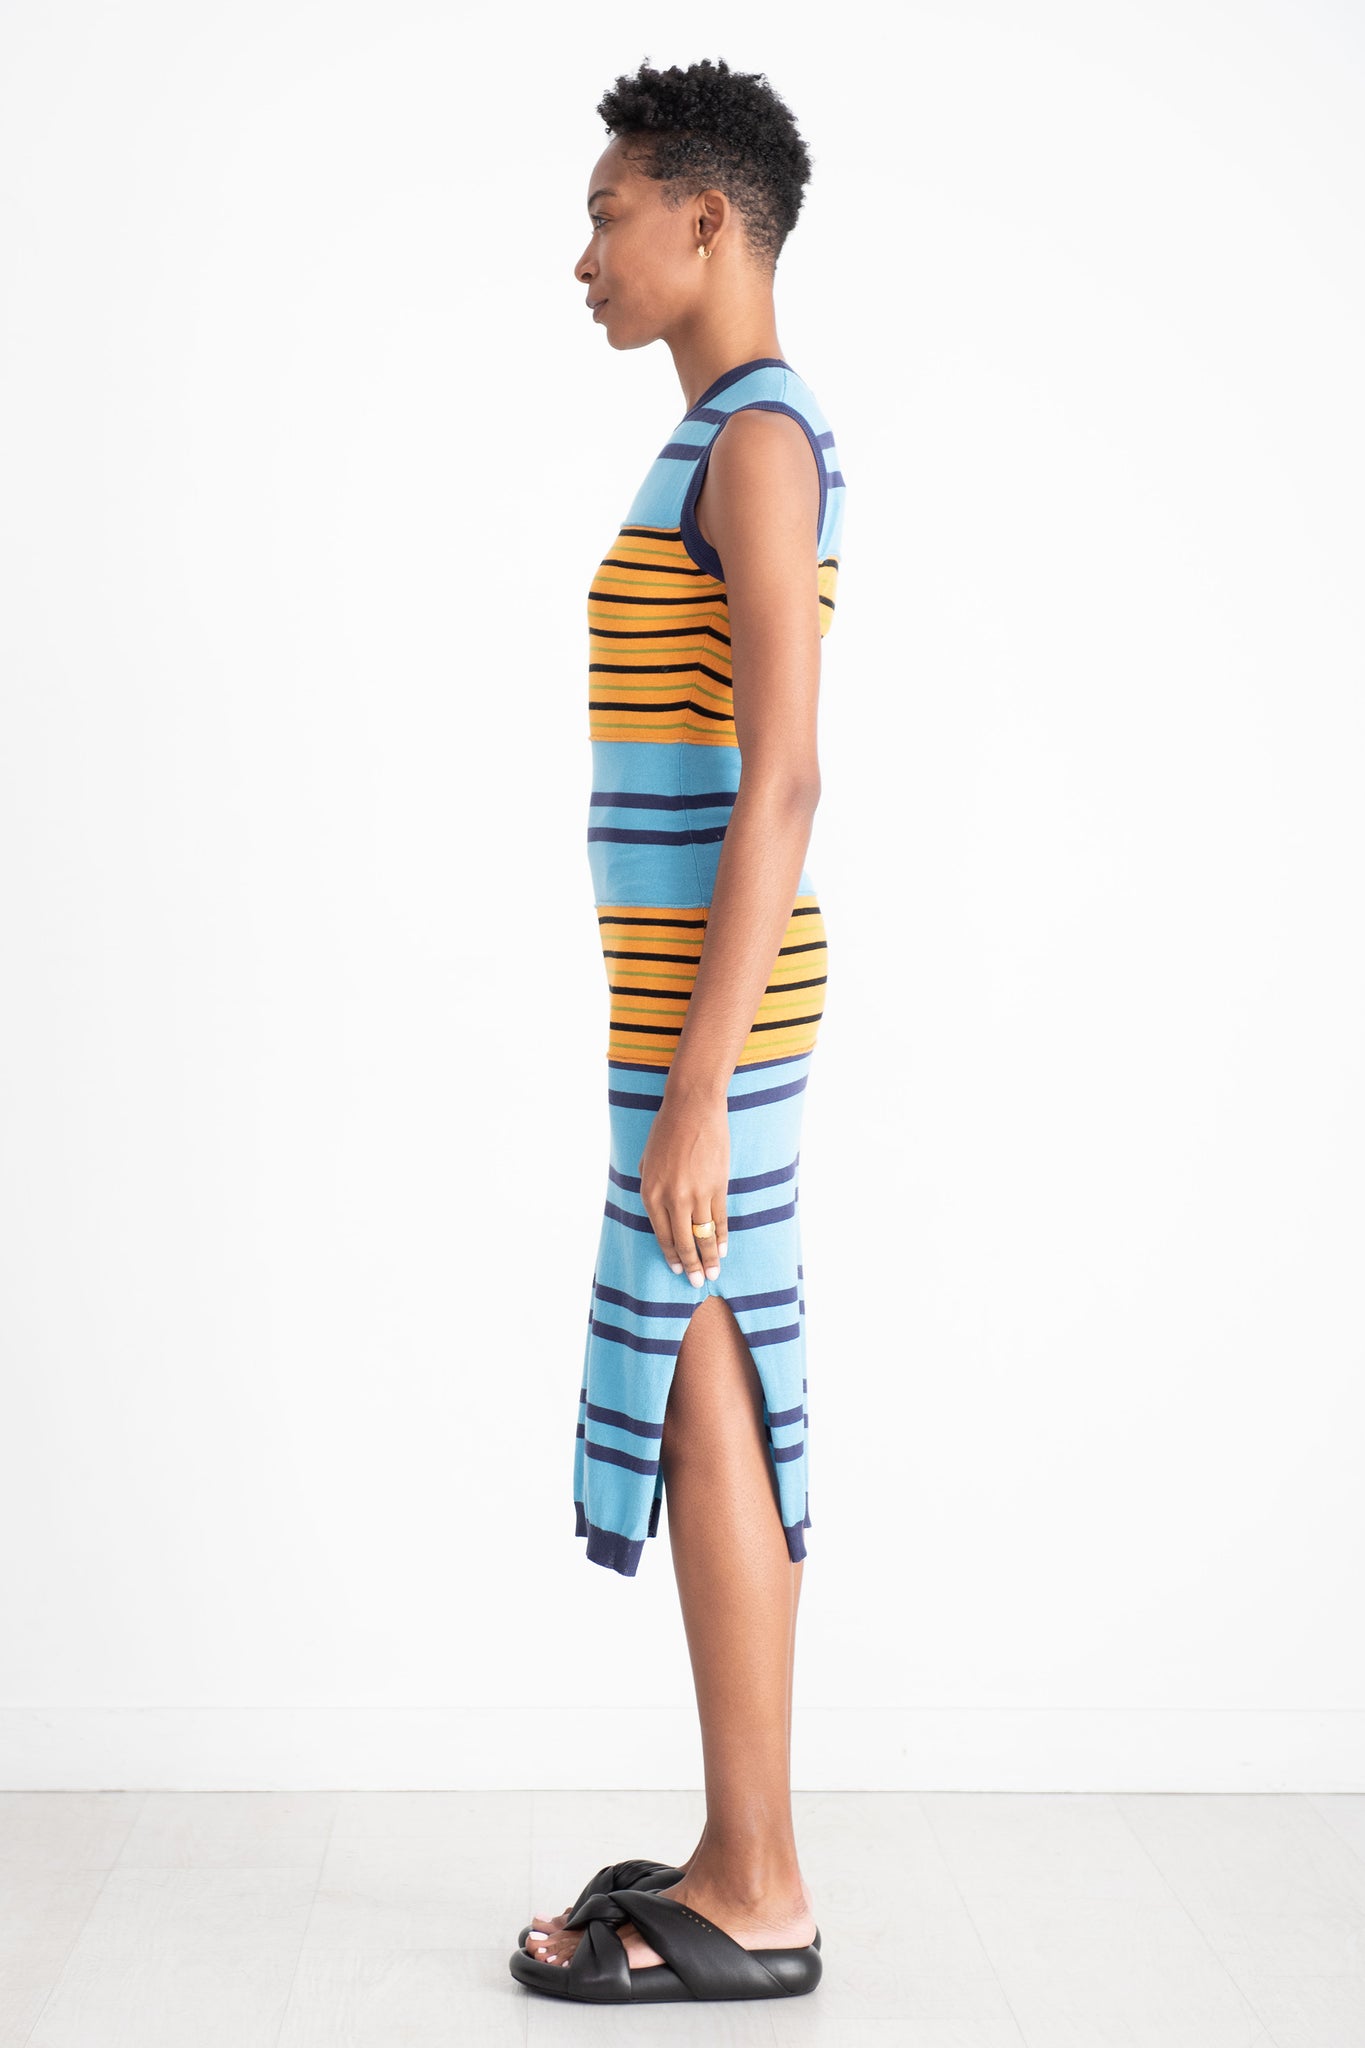 MARNI - Mixed Stripe Sleeveless Dress, Multi